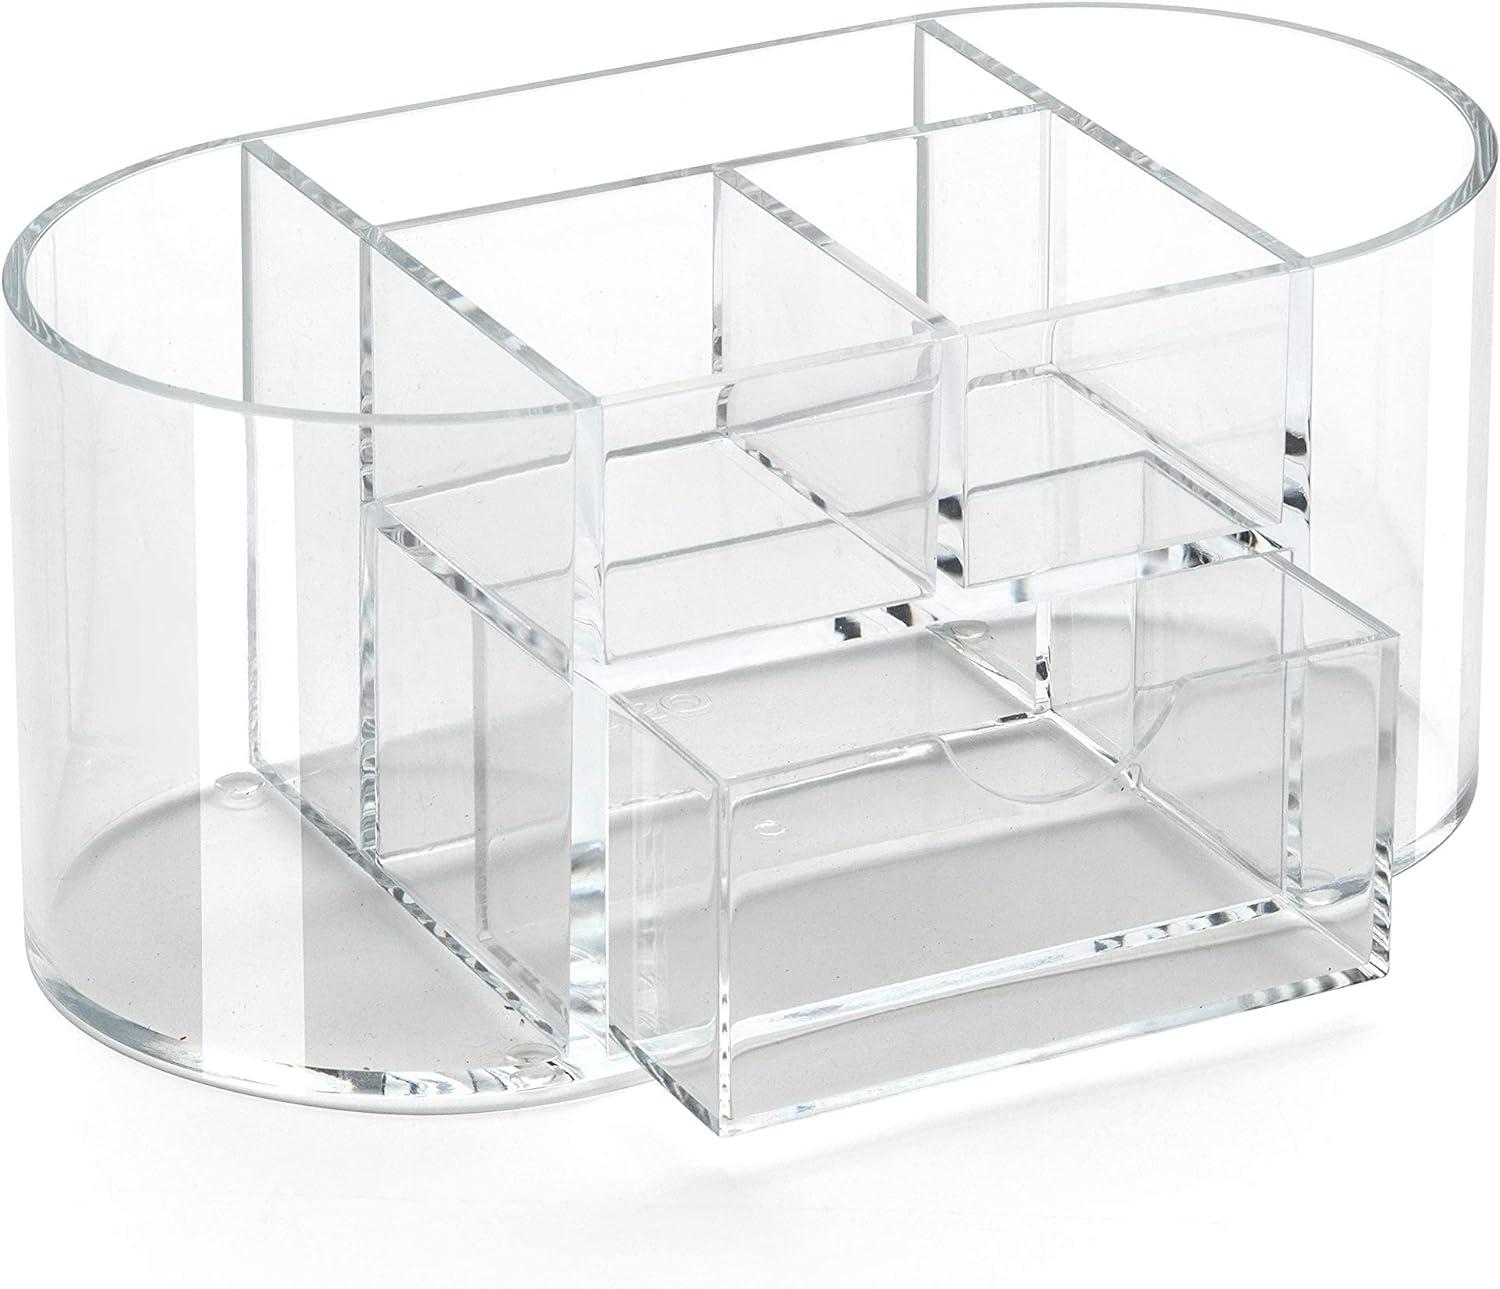 osco clear acrylic desk organiser with drawer  osco b08t66pggt